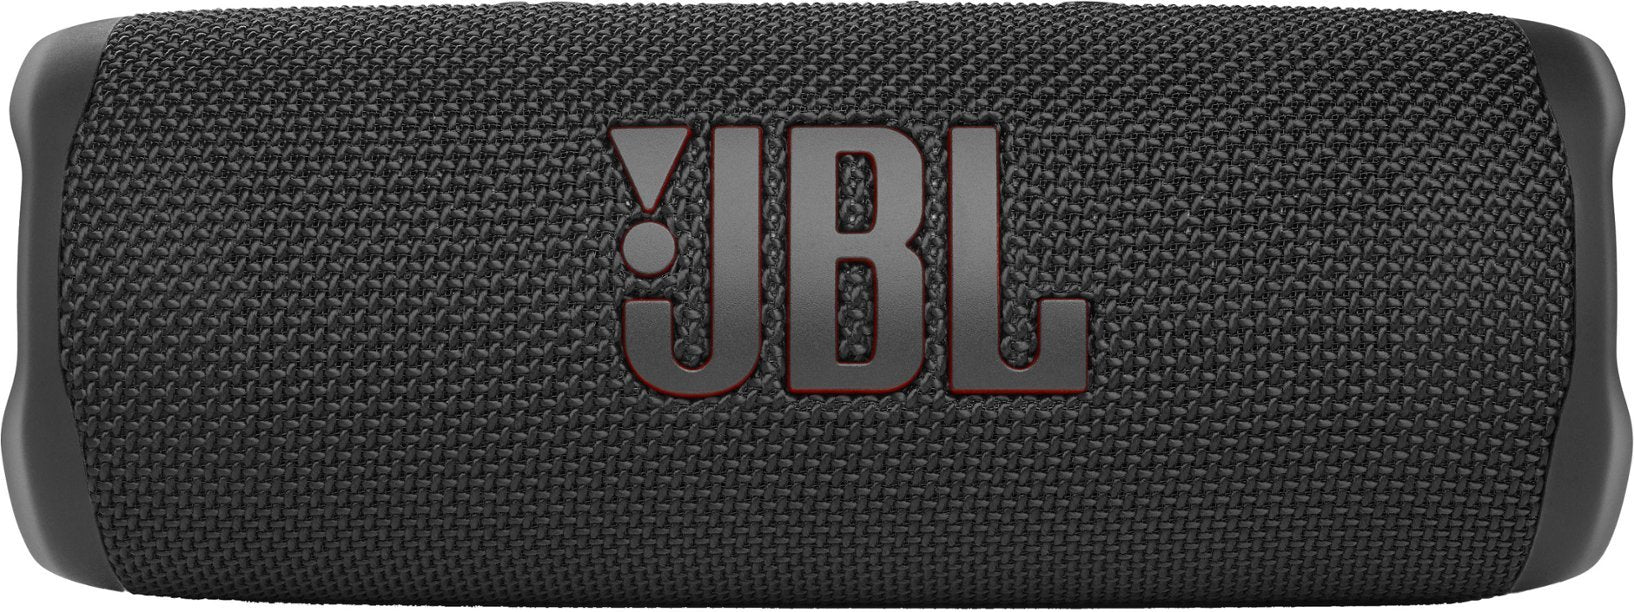 JBL FLIP 6 Portable Wireless Bluetooth Speaker IP67 Waterproof - TT - Black (New)